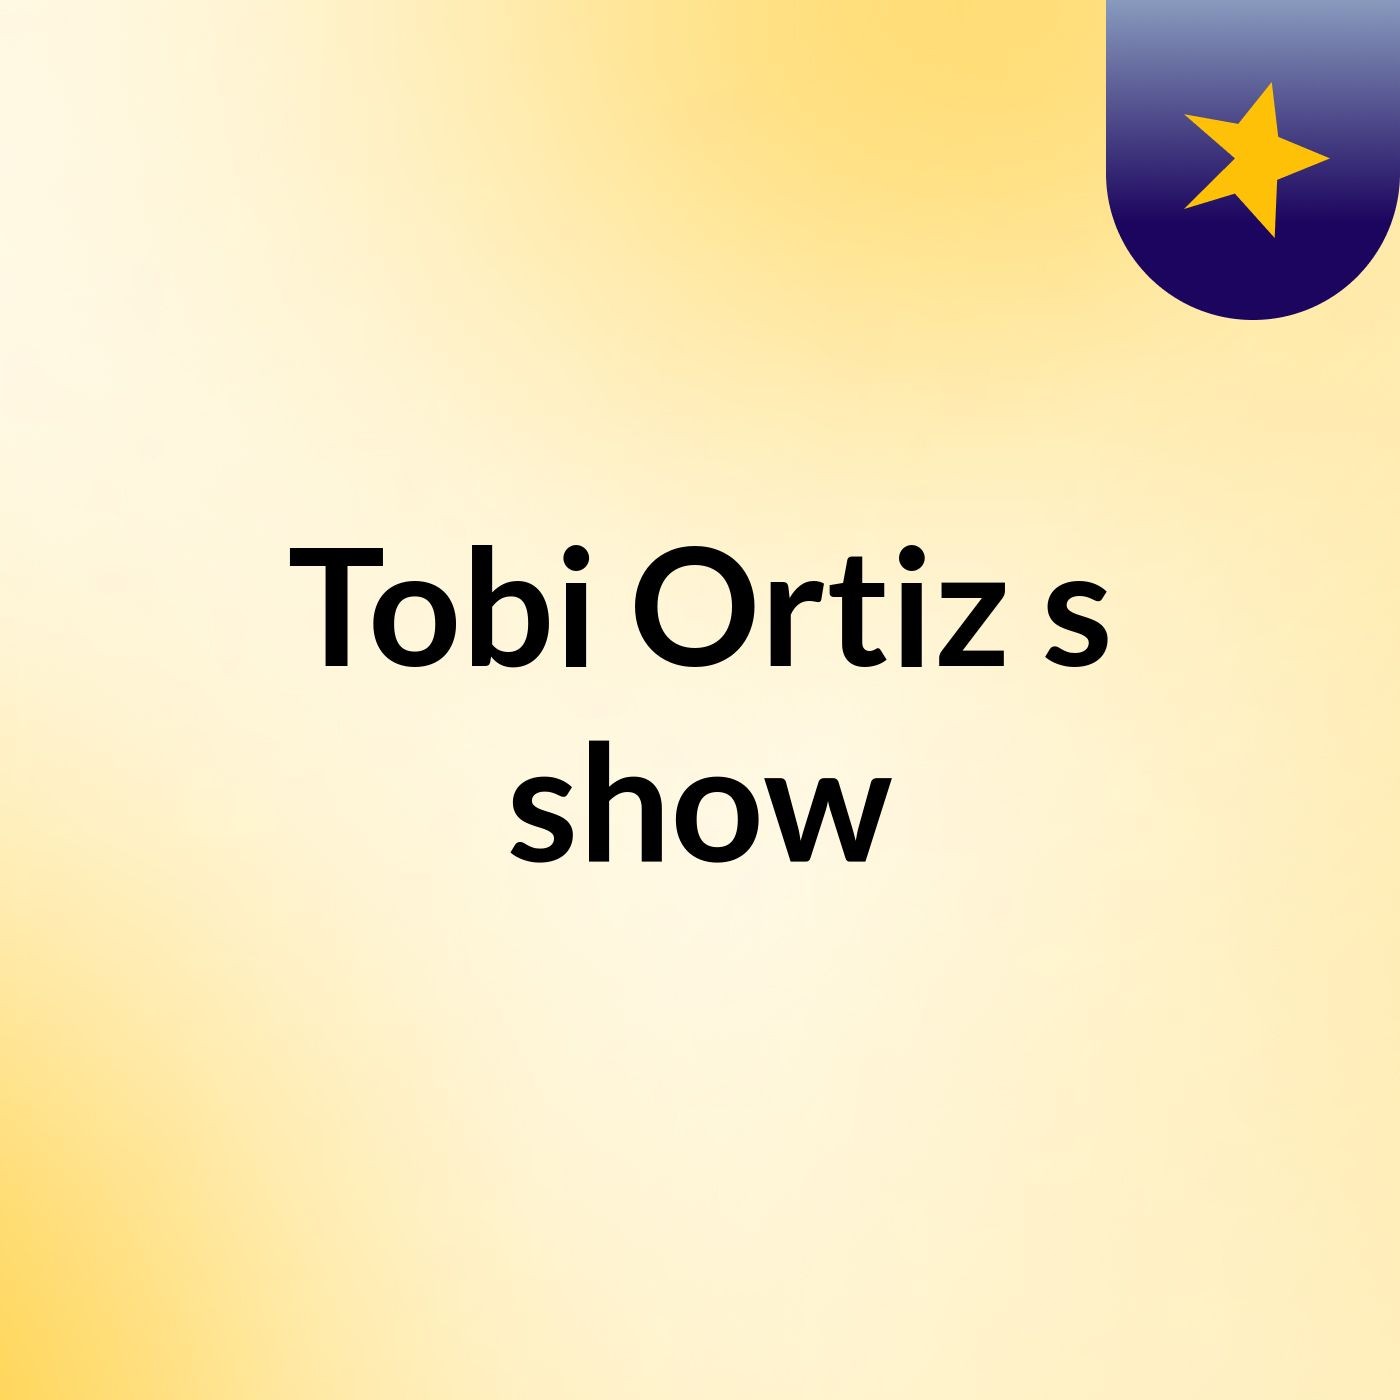 Tobi Ortiz's show